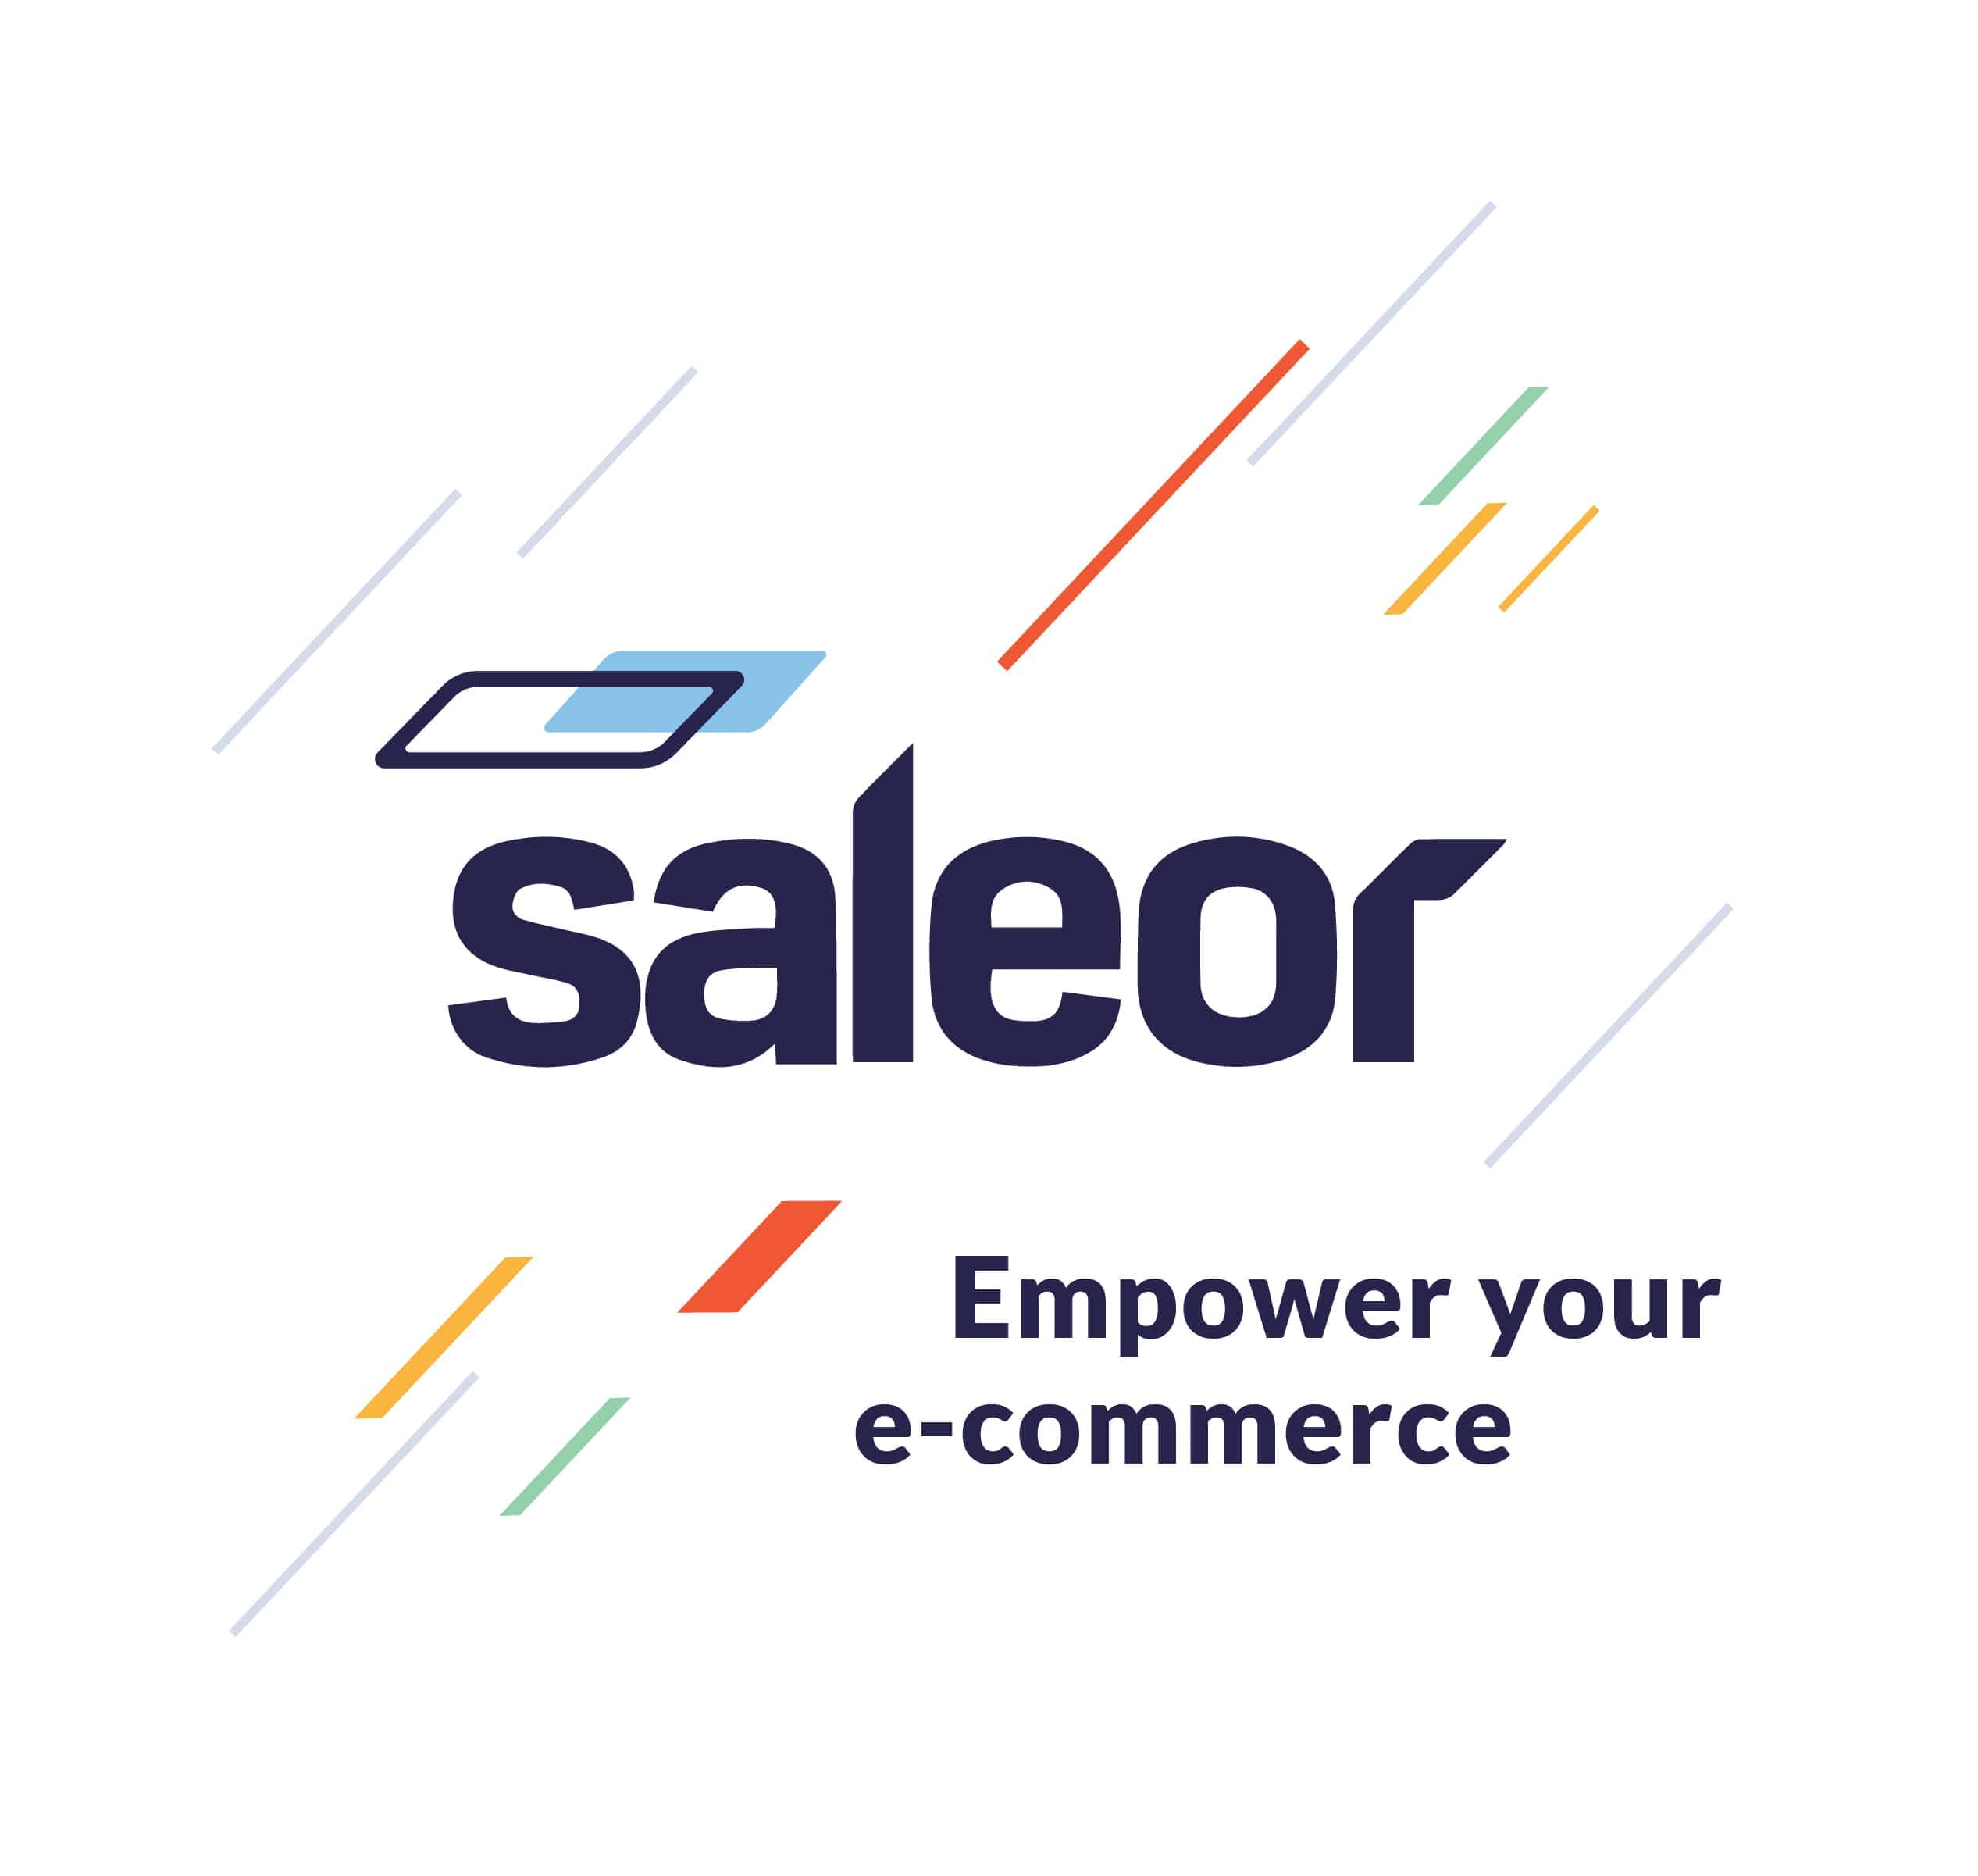 Saleor Empower your e-commerce.jpg